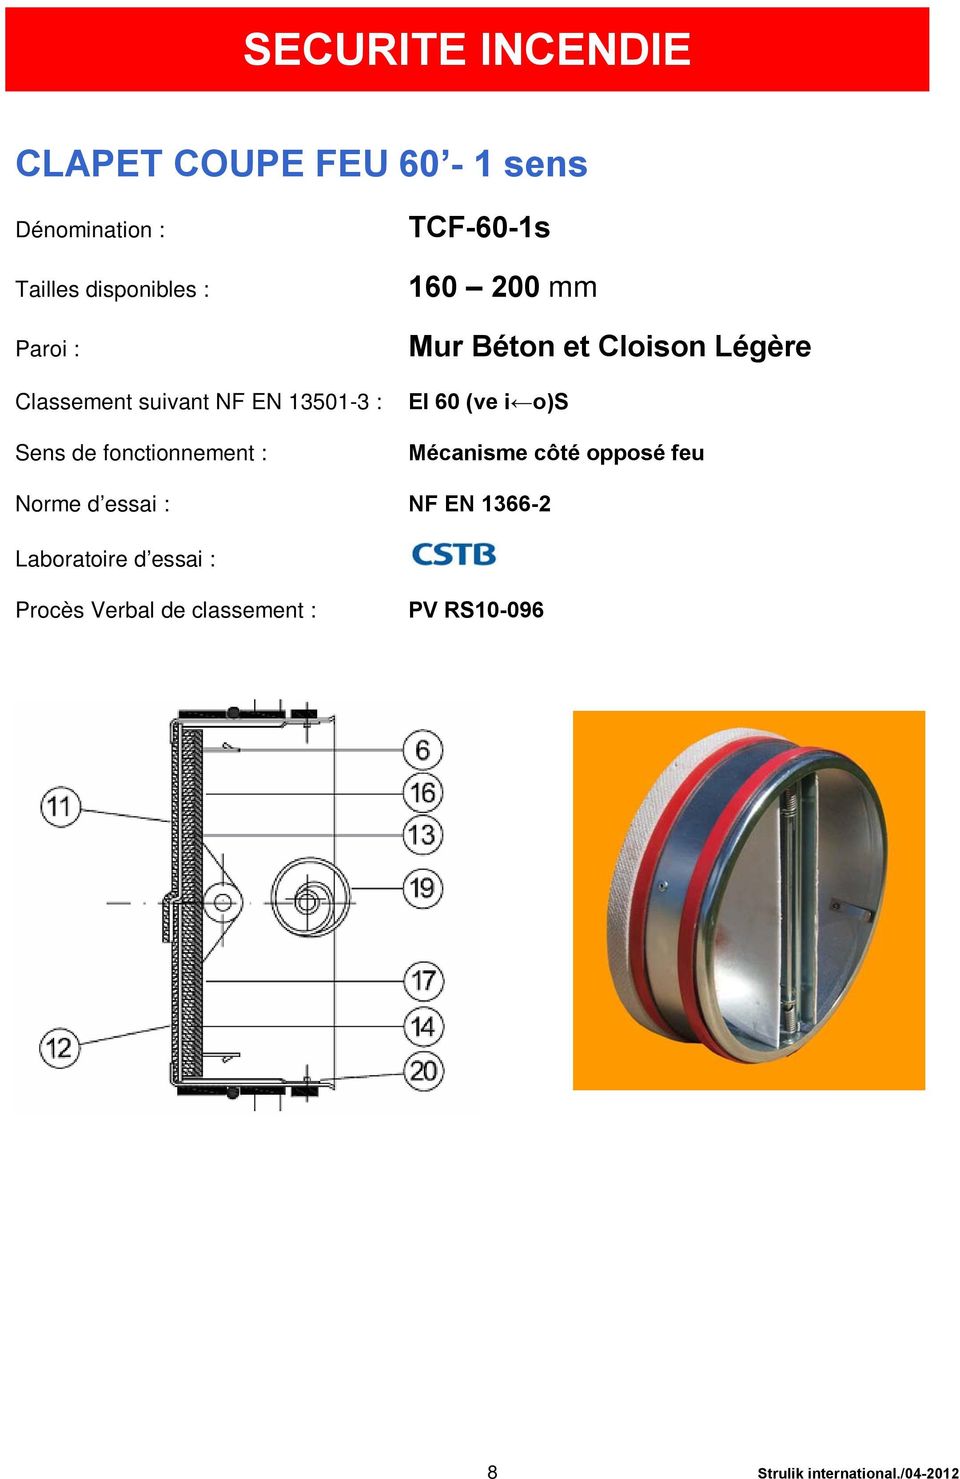 Cloison Légère EI 60 (ve i o)s Mécanisme côté opposé feu Norme d essai : NF EN 1366-2